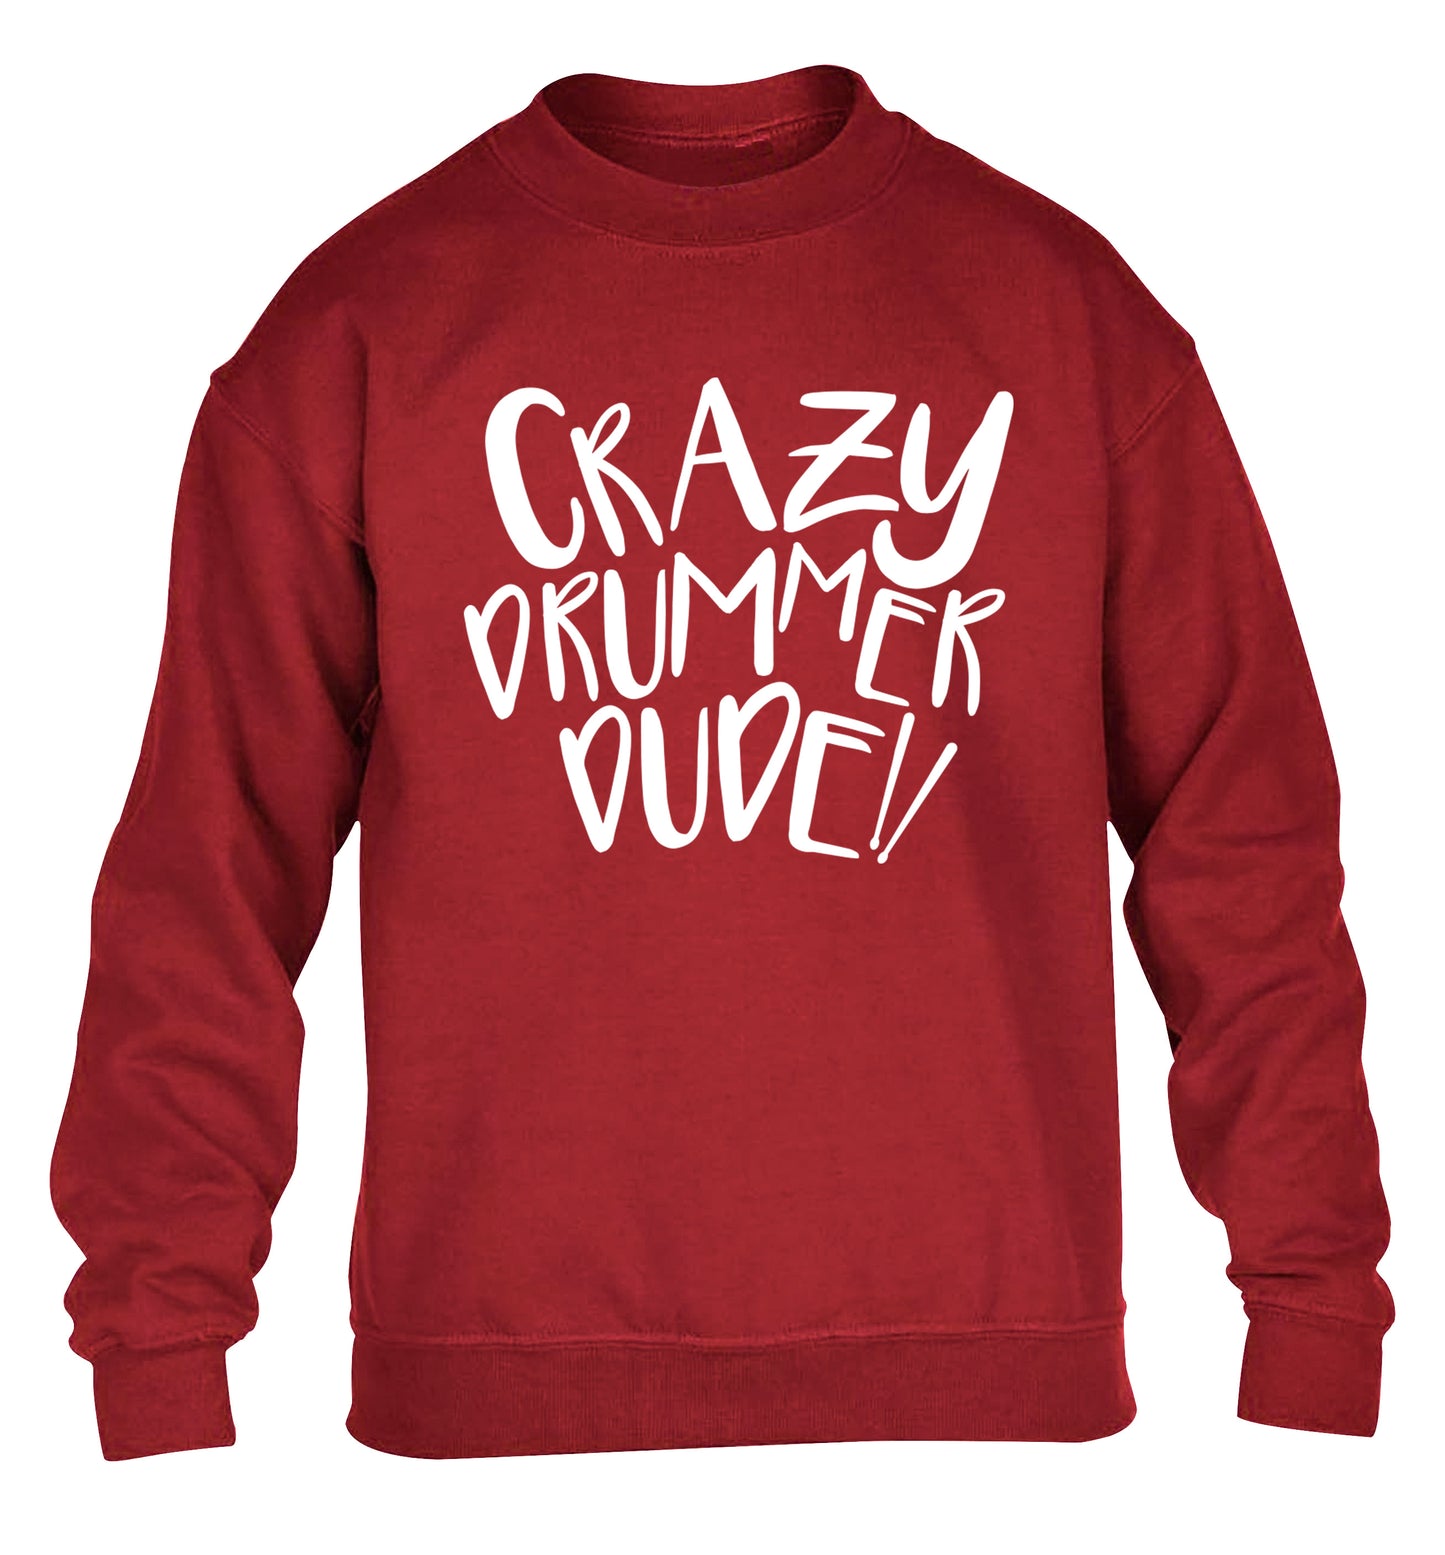 Crazy drummer dude children's grey sweater 12-14 Years